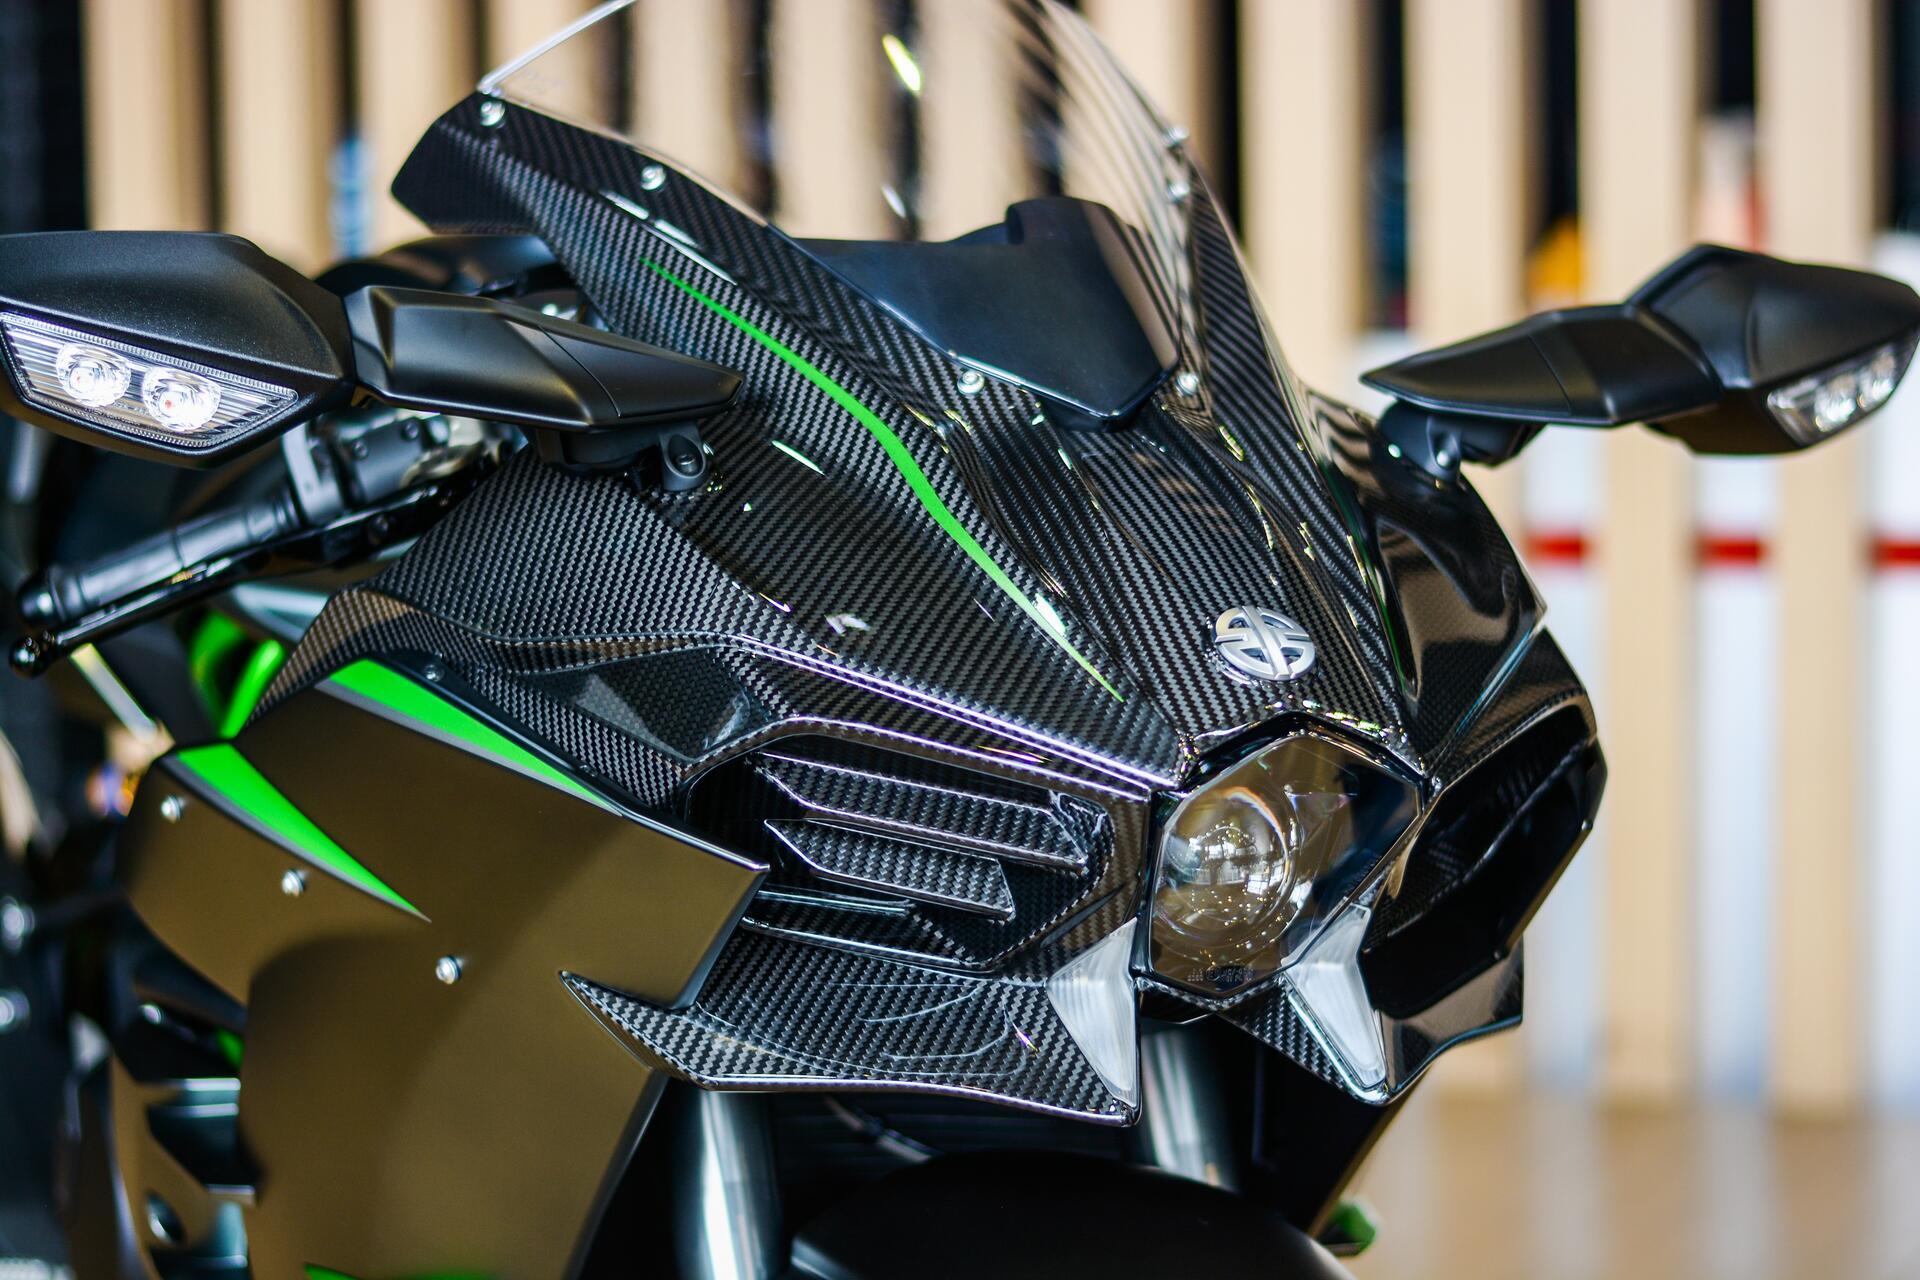 Chi tiết siêu môtô Kawasaki Ninja H2 Carbon giá 1,299 tỷ đồng